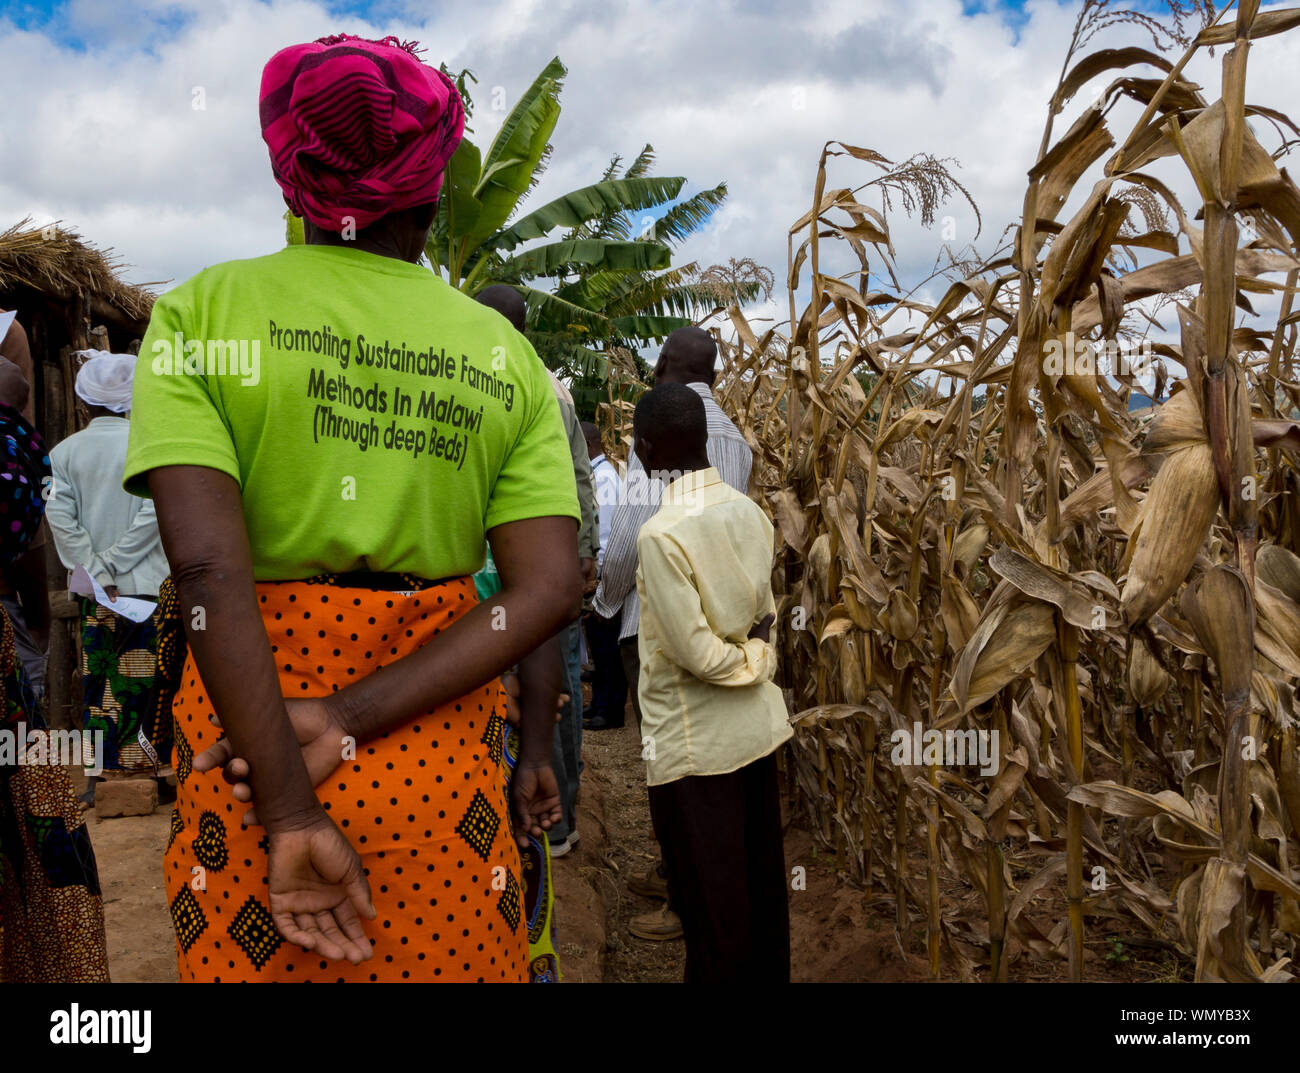 Les femmes agriculteur avec t-shirt la promotion durable de l'organisme de bienfaisance des Tiyeni-lit technique de culture (agriculture de conservation) au Malawi. Banque D'Images